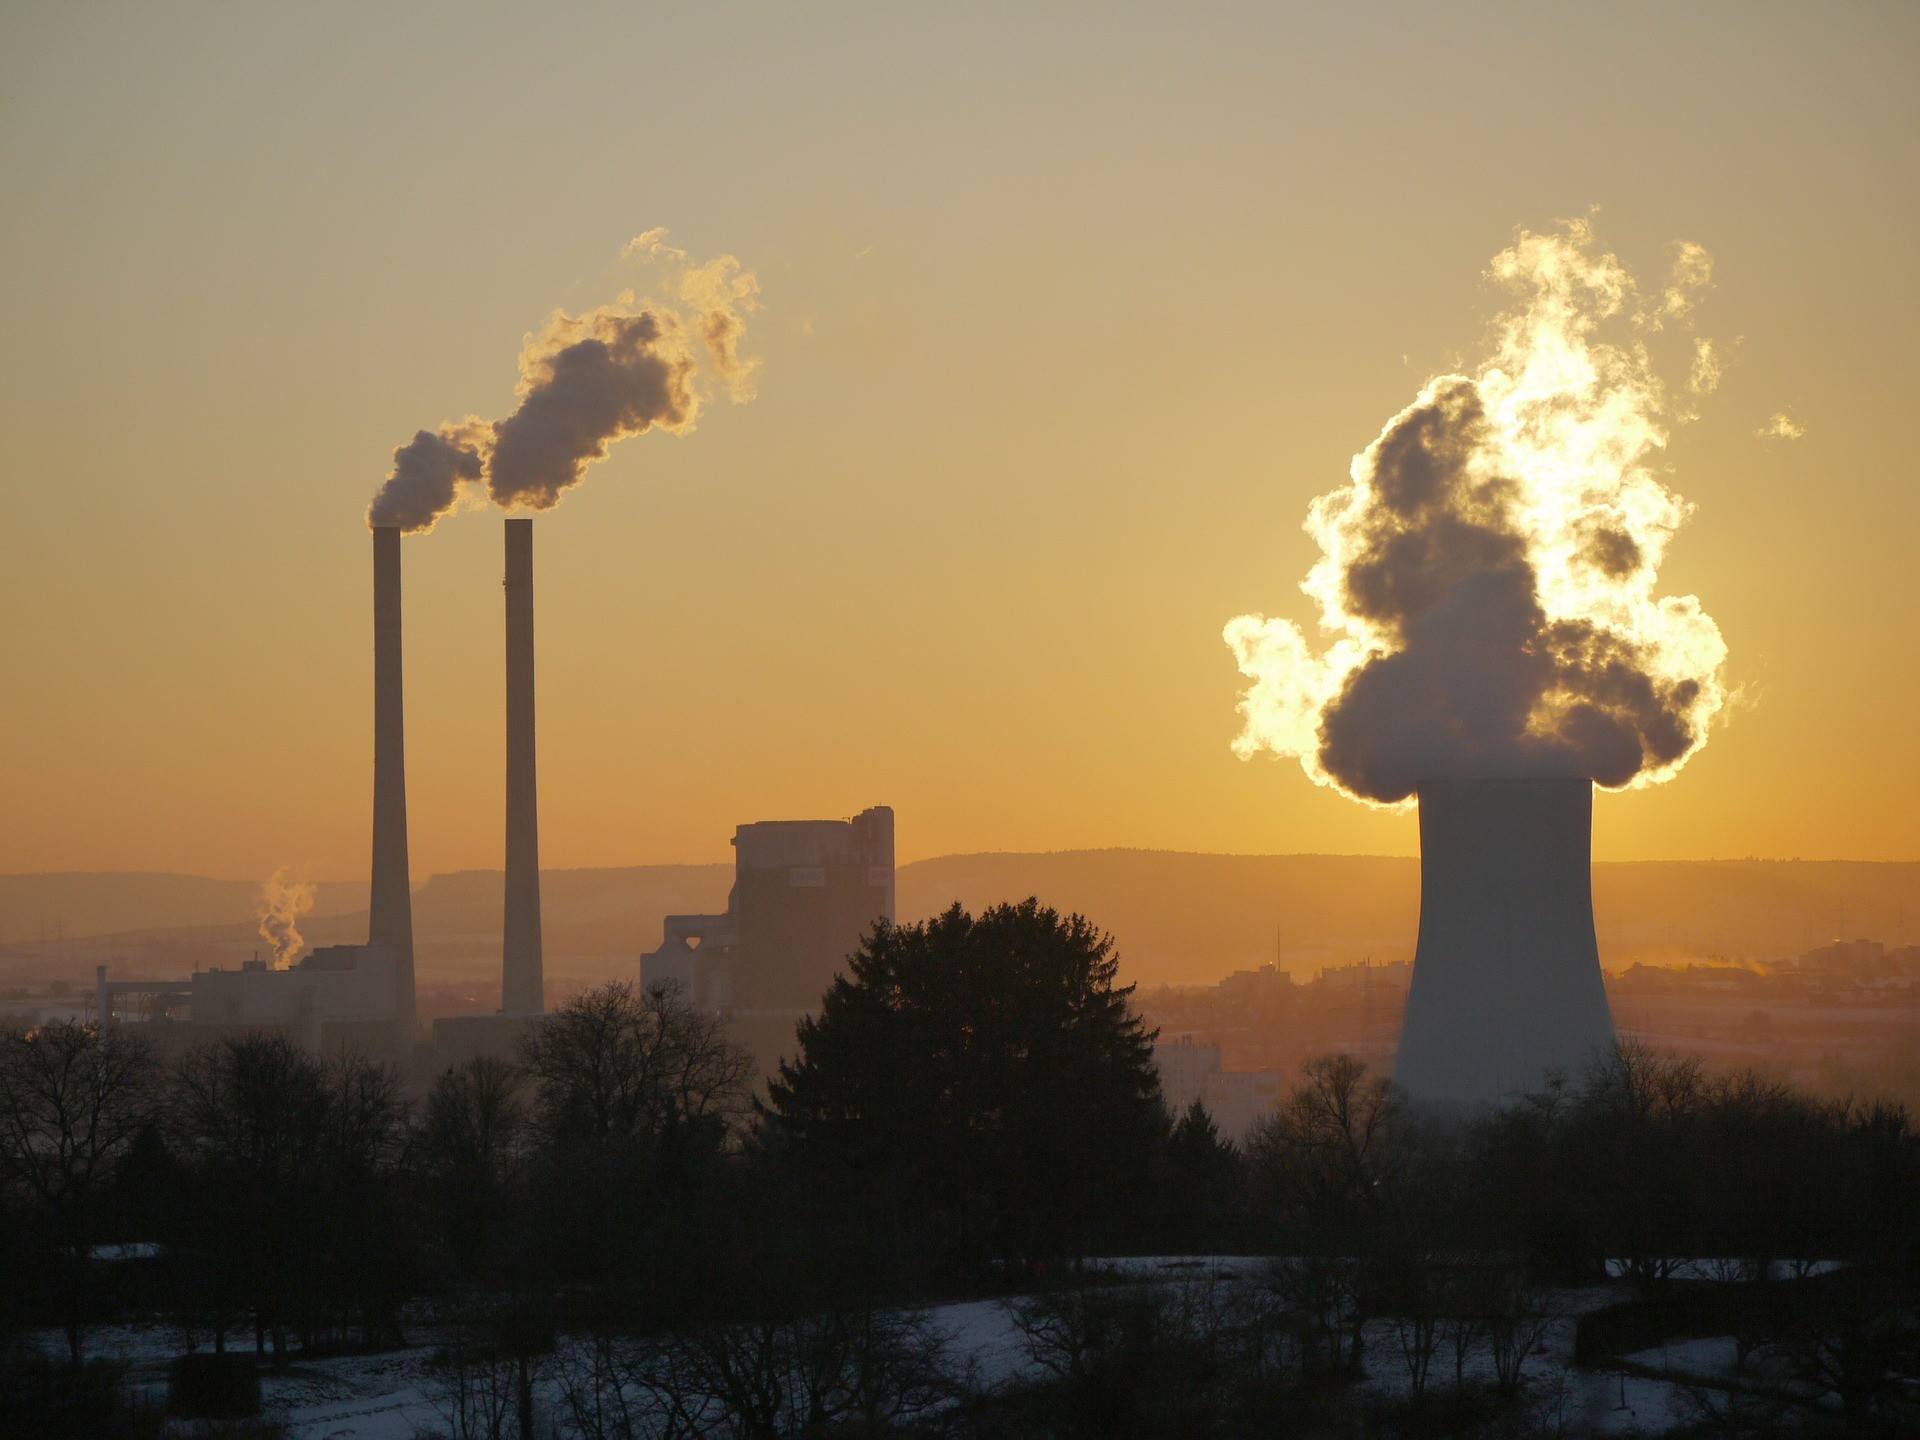 Acabar com a queima de carvão mineral para a produção de energia elétrica é uma das mais importantes medidas para conter o aquecimento global. (Foto: Creative Commons / MonikaP)